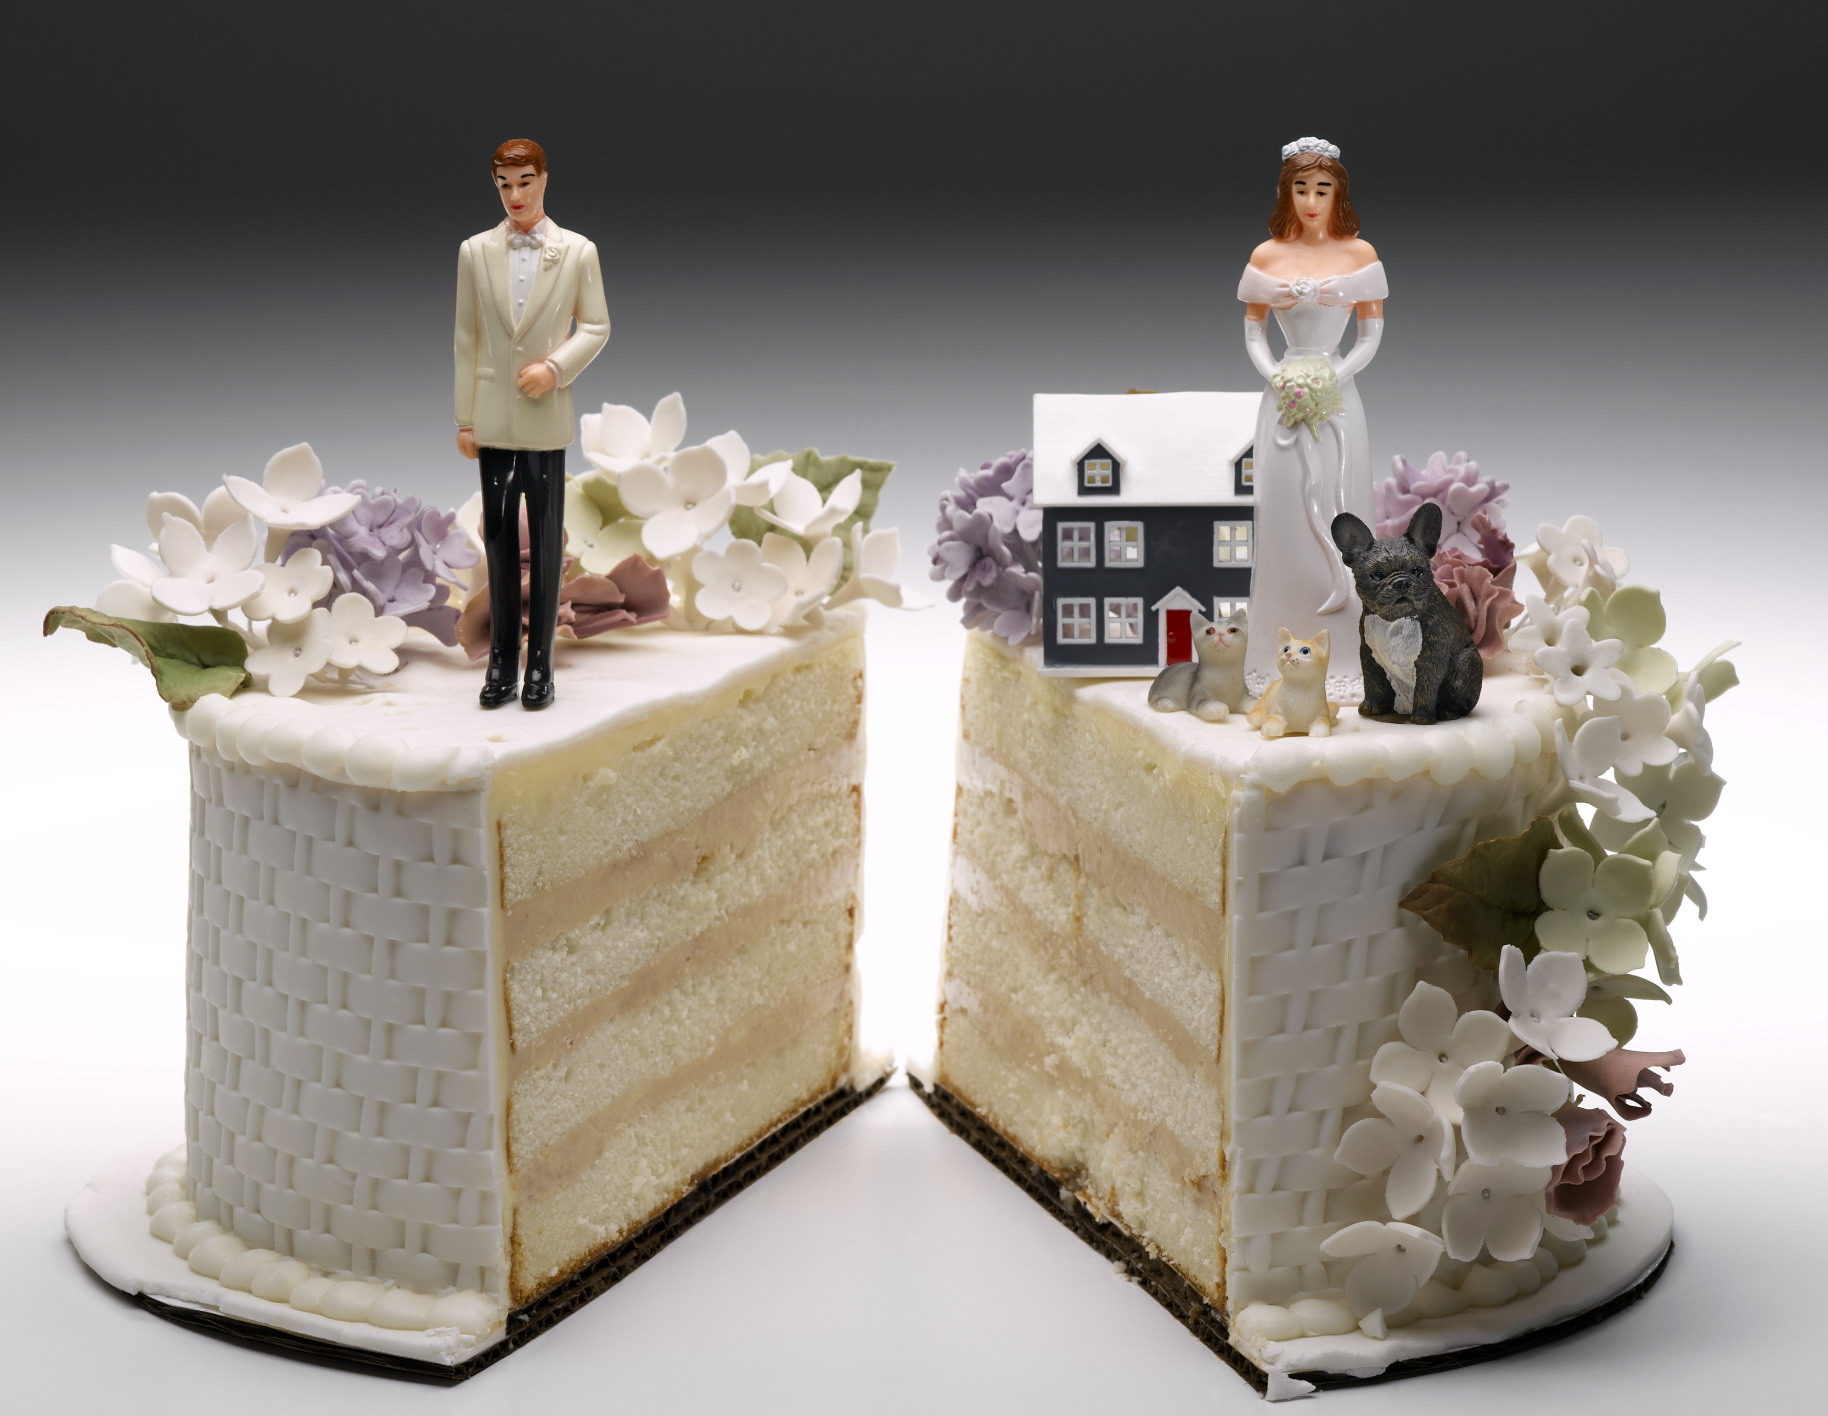  “Dura lex sed lex”: da oggi entra in vigore la legge sul ‘divorzio breve’